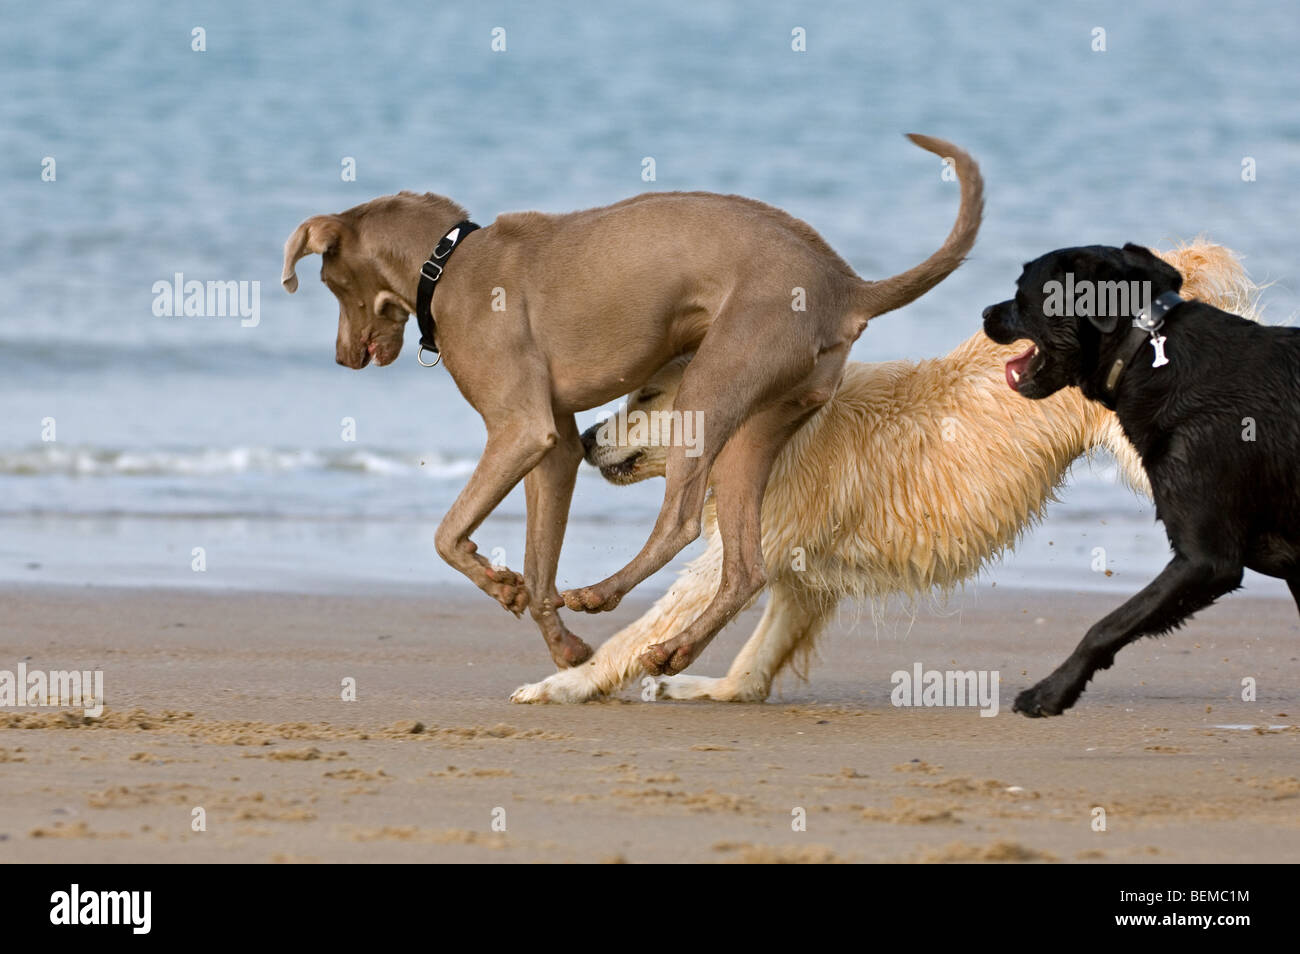 Spielerische Golden Retriever und Labrador Retriever spielen mit anderen Hund am Strand an der Nordsee-Küste Stockfoto